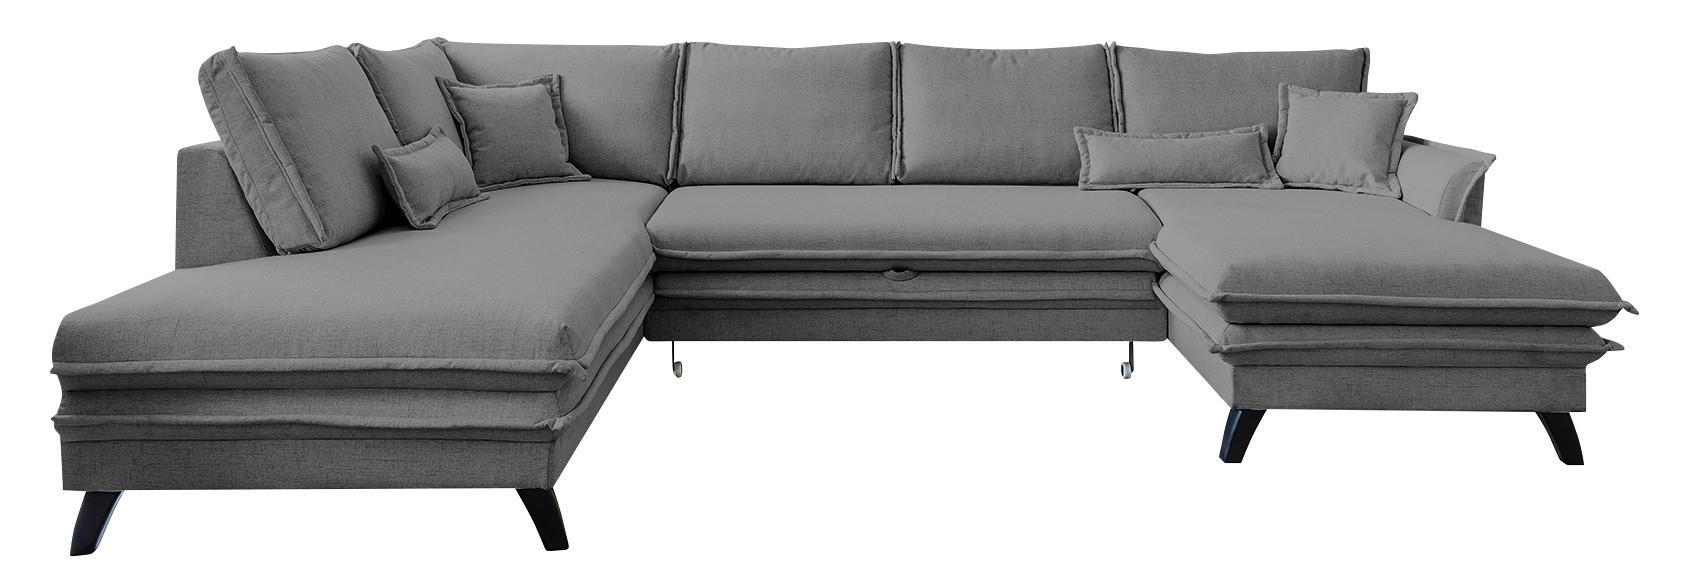 Sedežna Garnitura Charming Charlie, Siva, Z Ležiščem - siva/črna, Basics, tekstil/leseni material (200/300/150cm) - MID.YOU